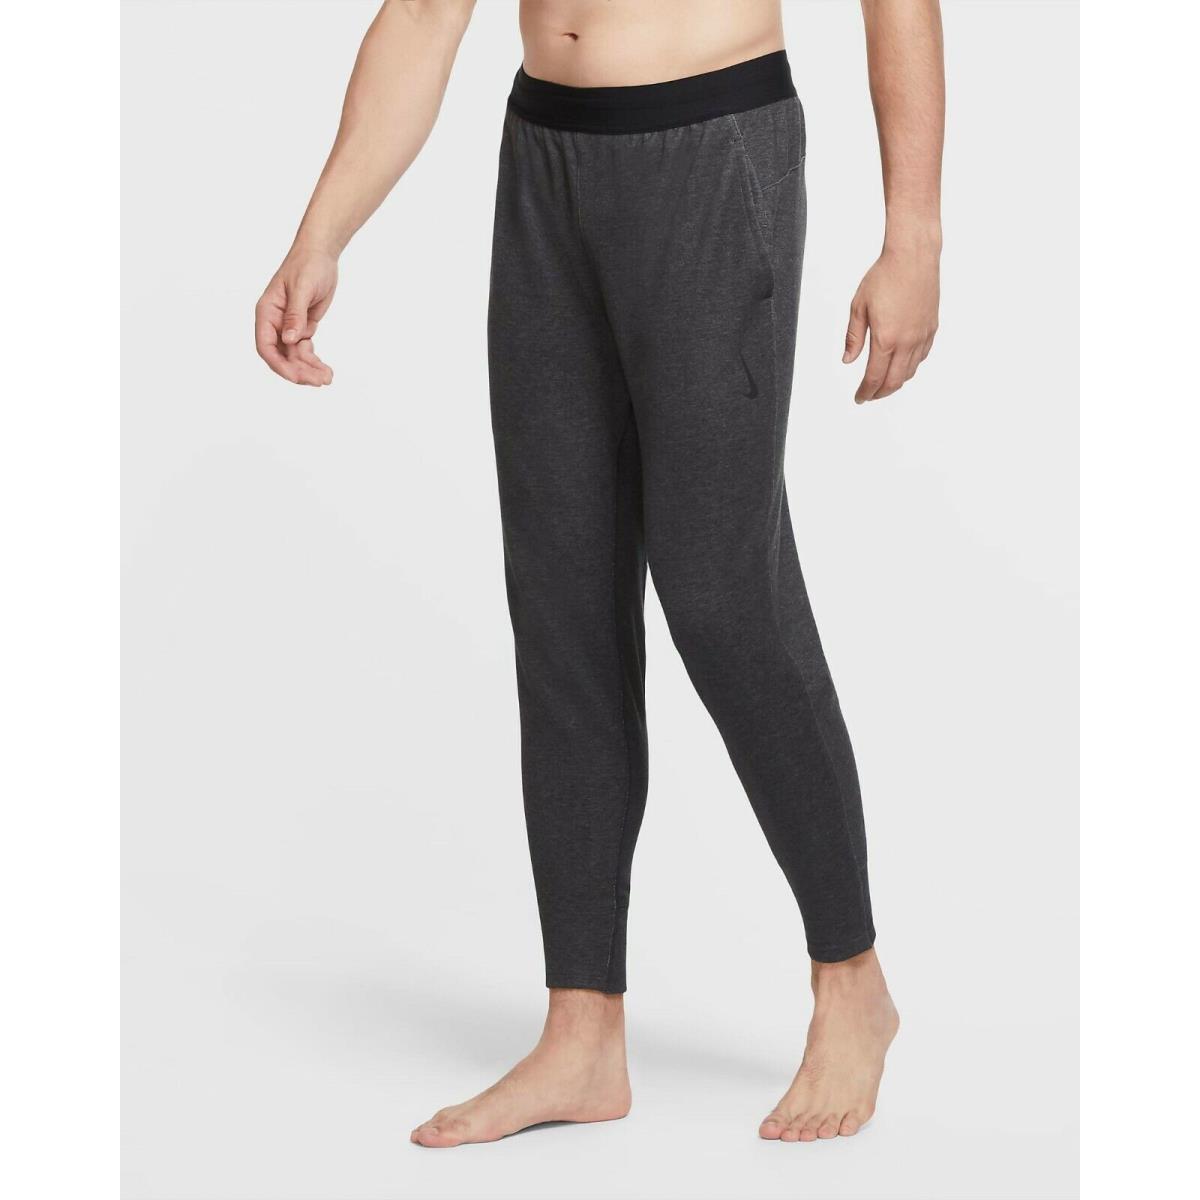 Nike Yoga Pants Heather/black CU6782 010 Men`s Size 4XLT-TALL